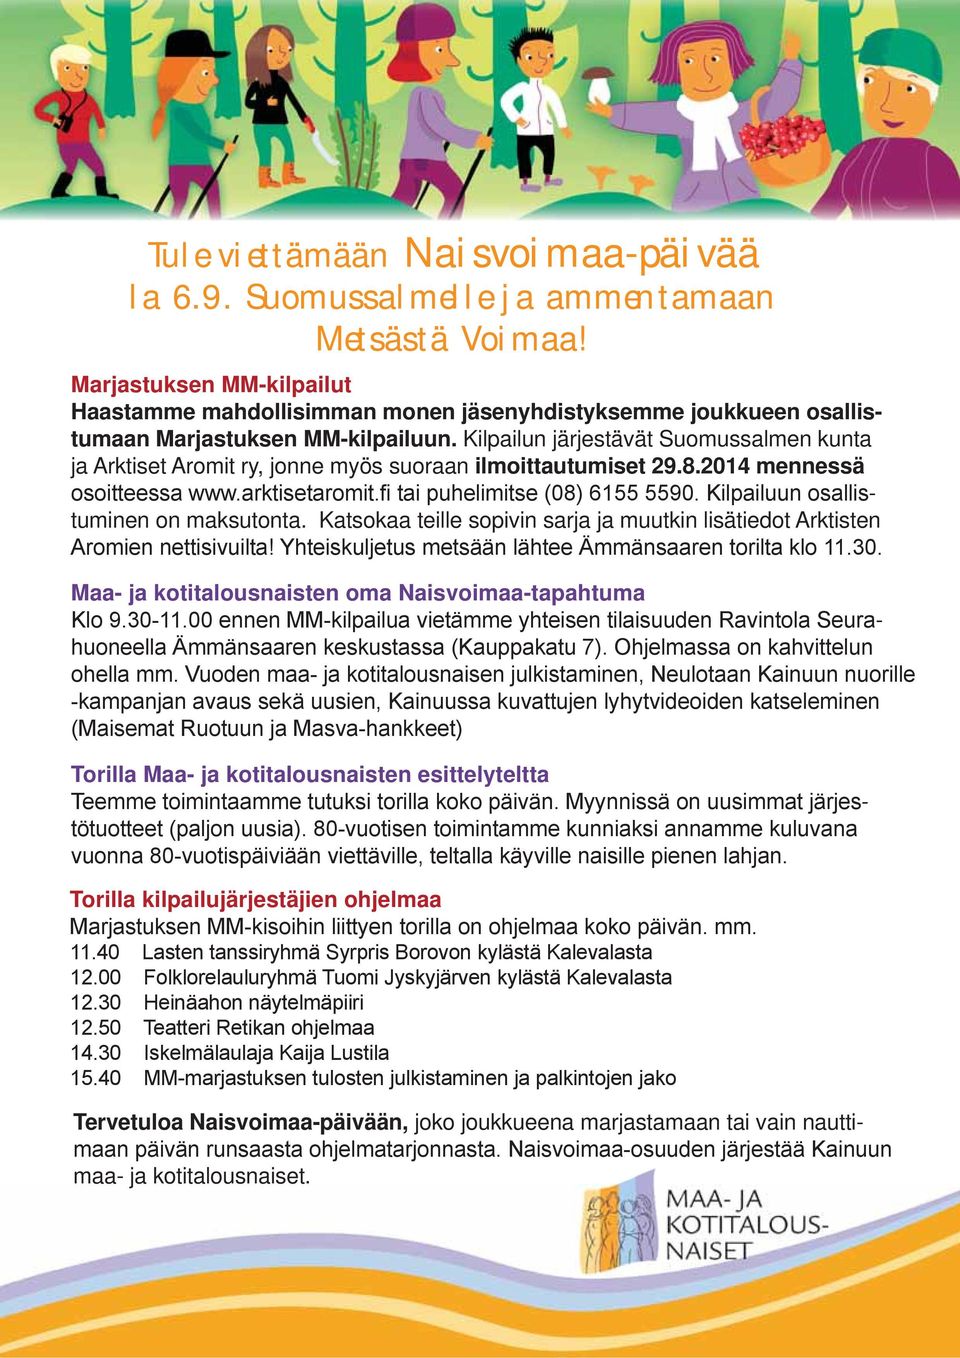 Kilpailun järjestävät Suomussalmen kunta ja Arktiset Aromit ry, jonne myös suoraan ilmoittautumiset 29.8.2014 mennessä tuminen on maksutonta.